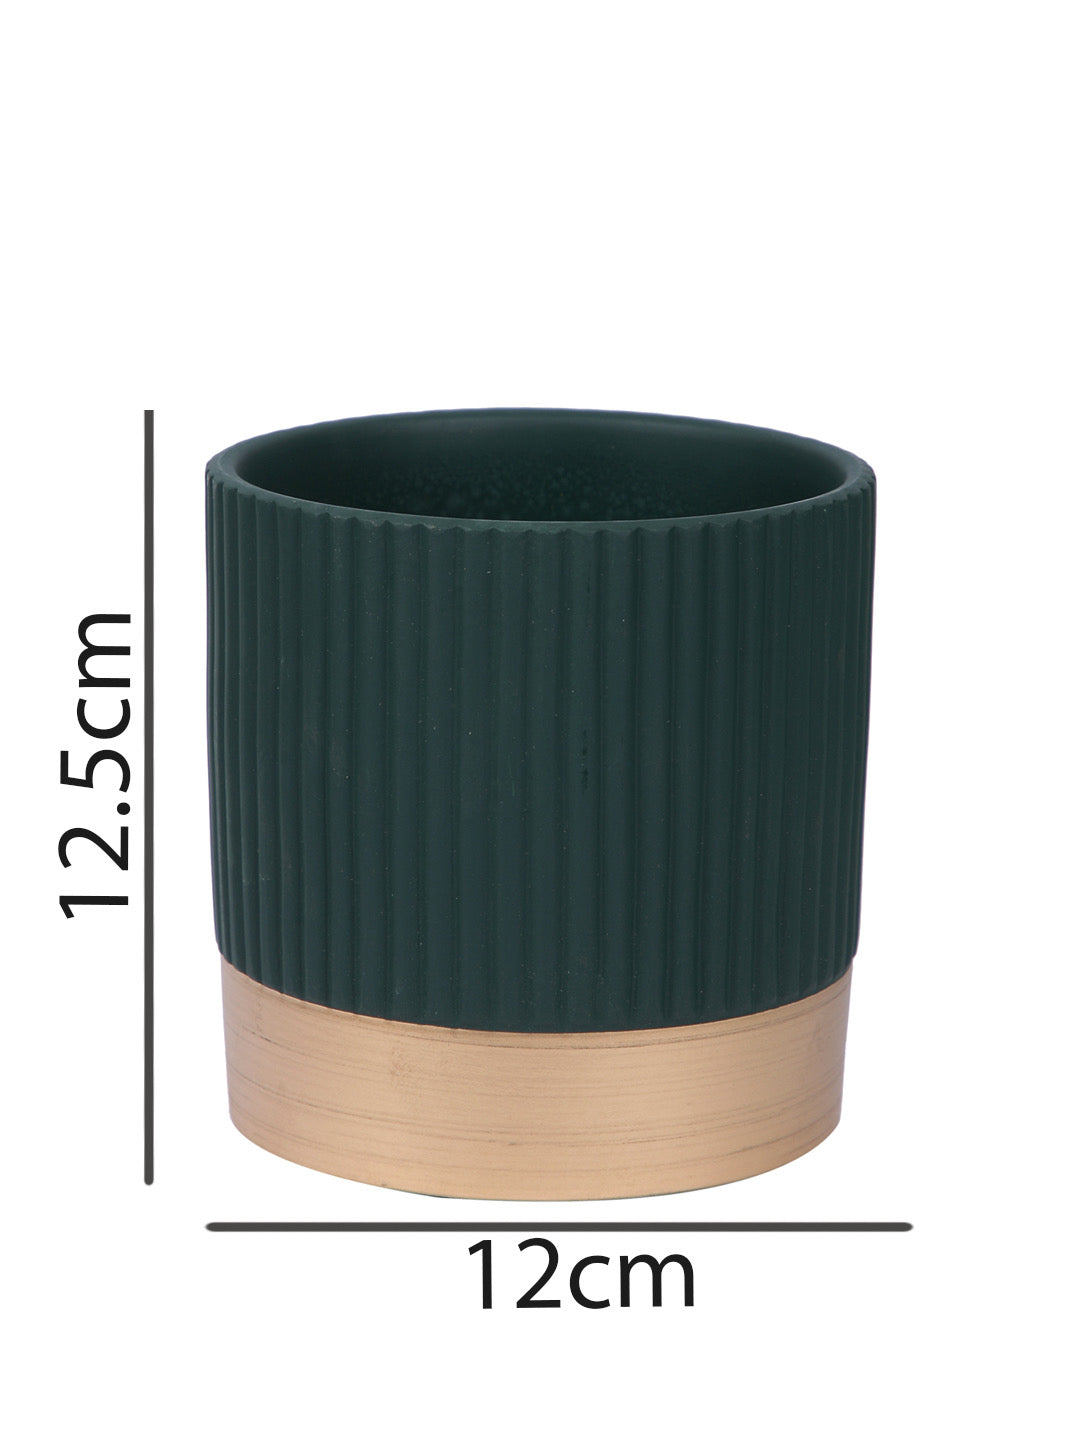 Fluted Design Ceramic Planter with Golden Border Set of 3 - Default Title (CHC22506_3)